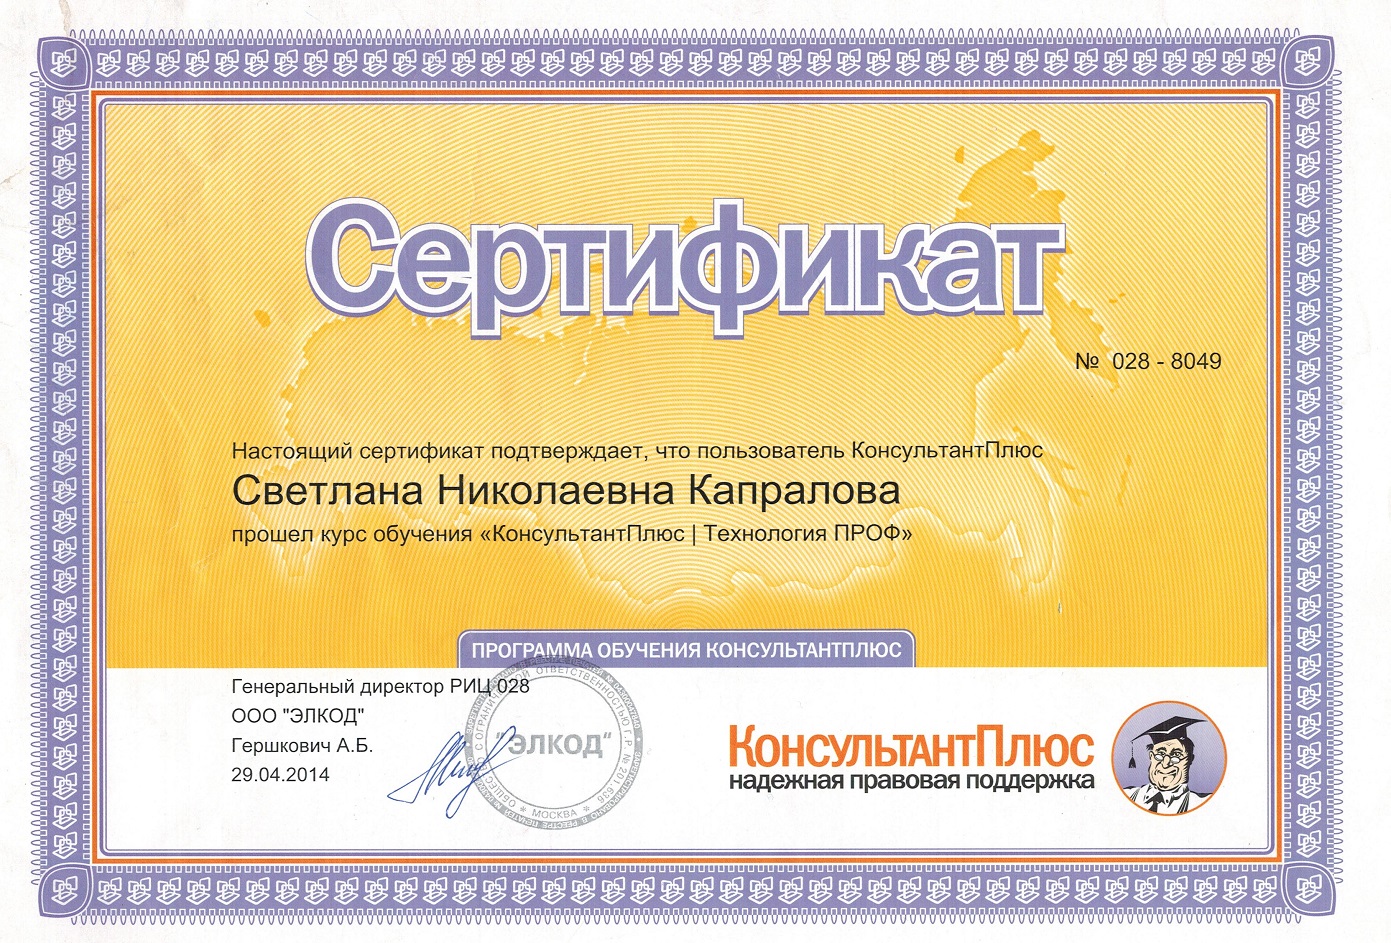 Сертификат Консультант Плюс 2014